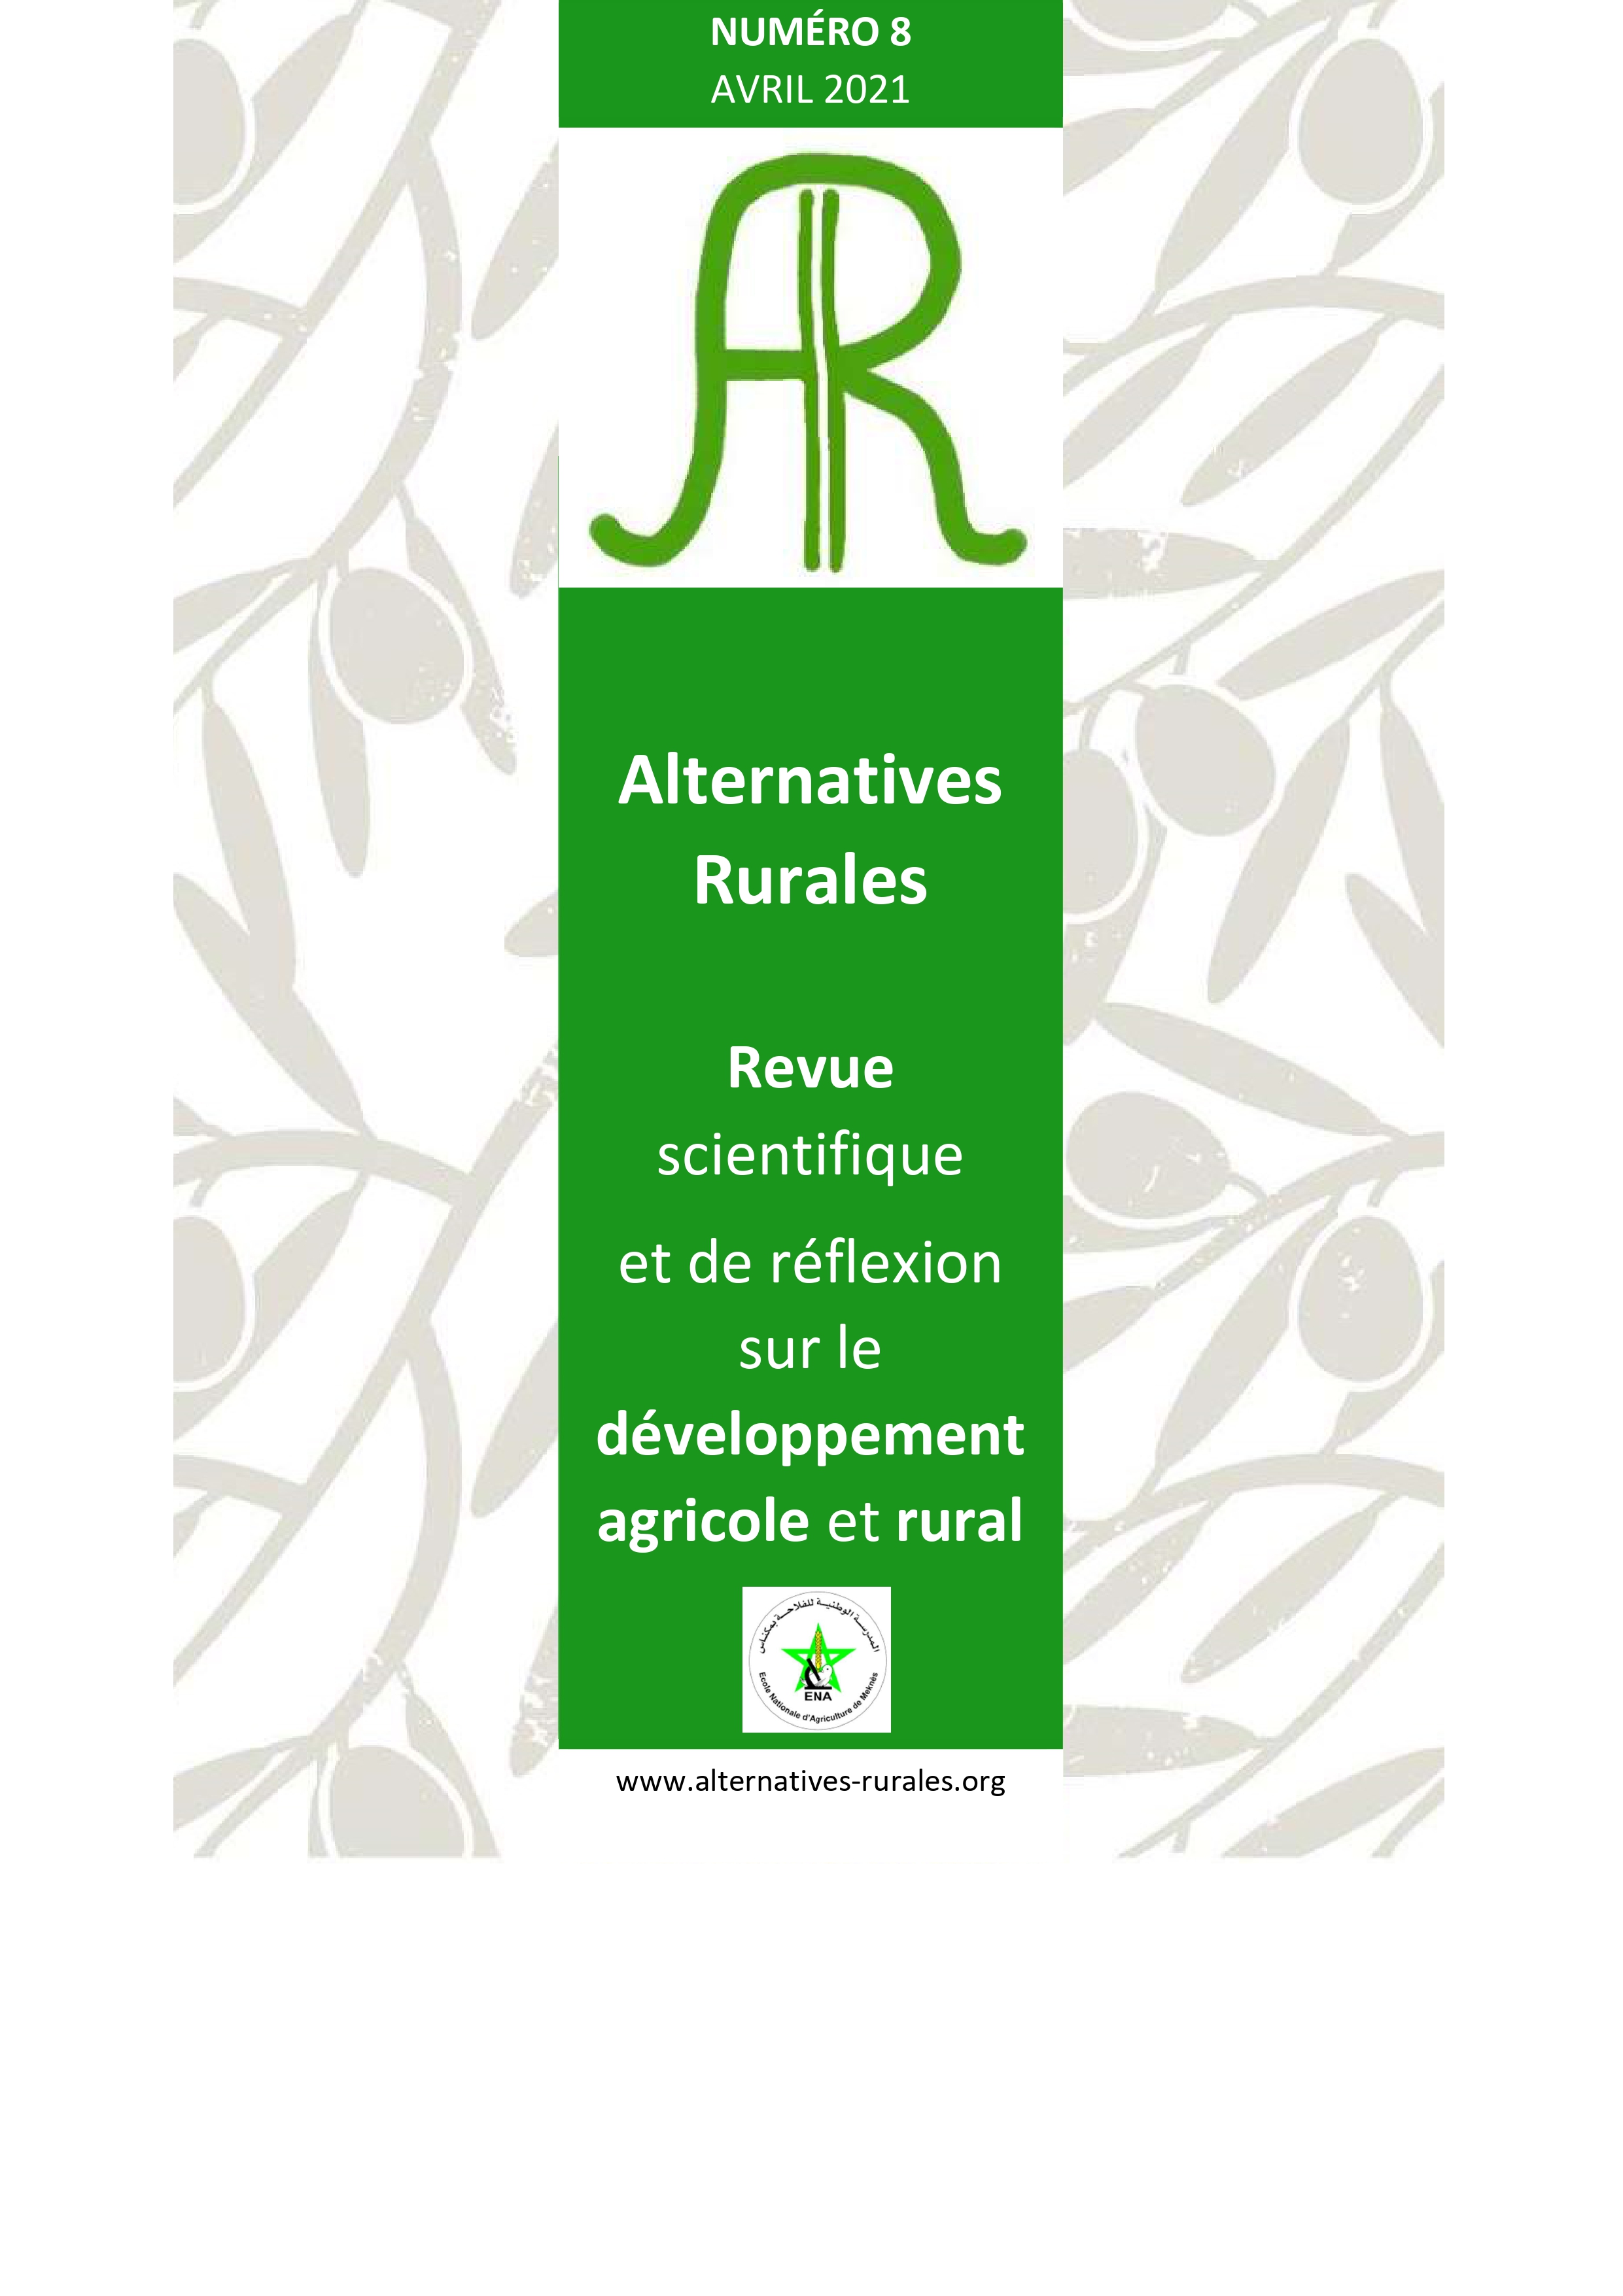 Alternatives Rurales: Revue scientifique et de réflexion sur le développement agricole et rural